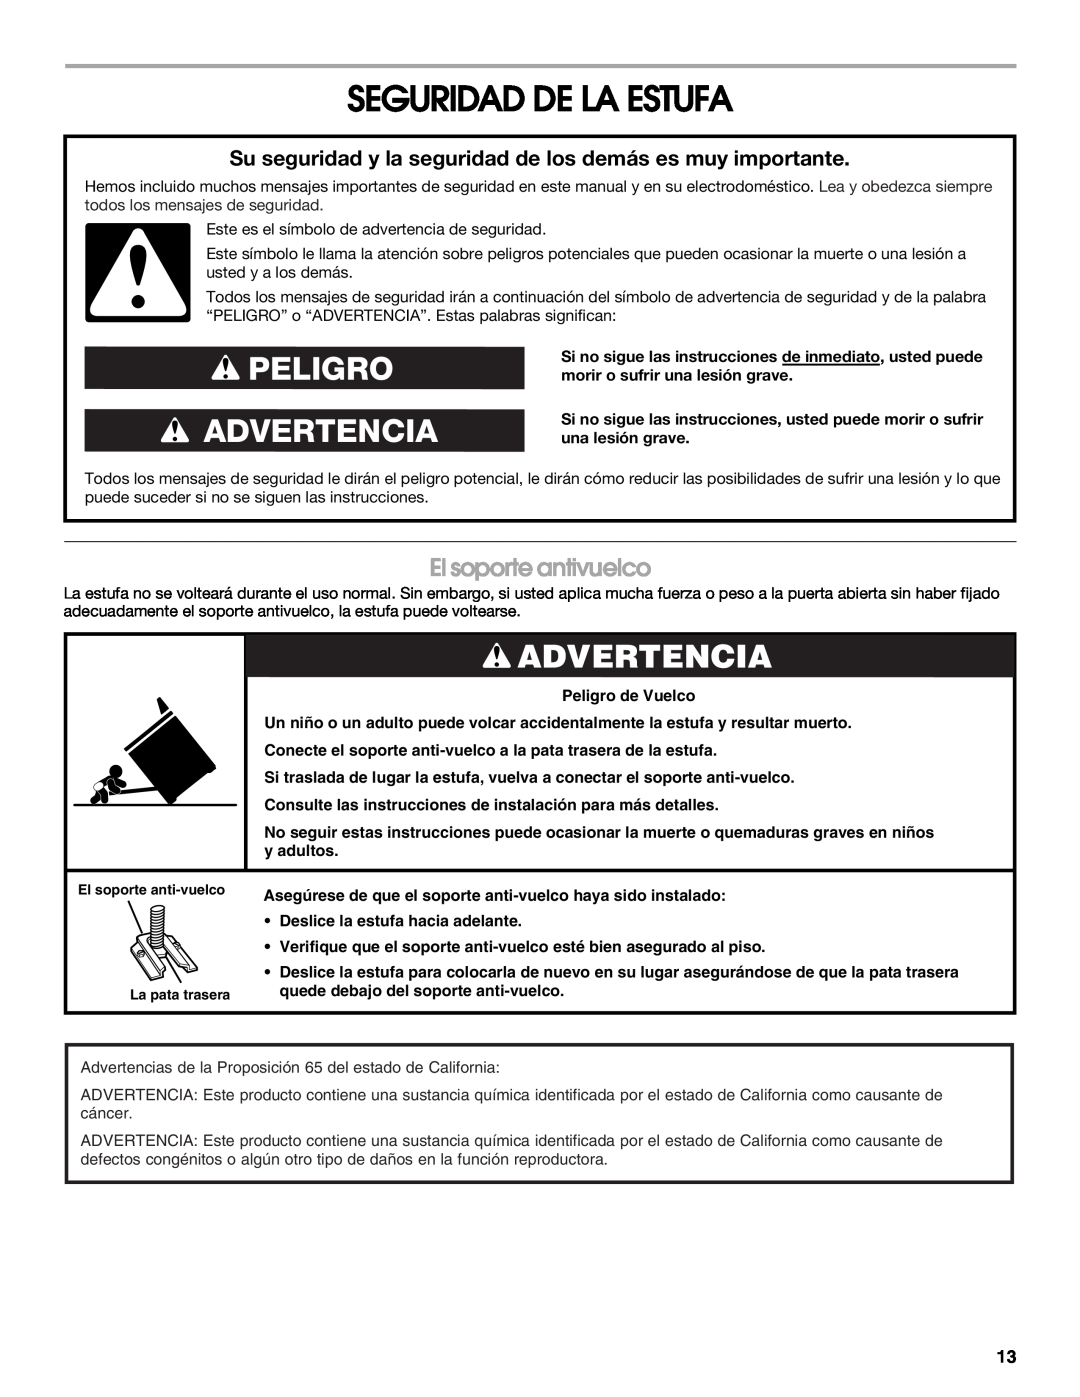 Estate W10175655B manual Seguridad De La Estufa, El soporte antivuelco, Peligro Advertencia 